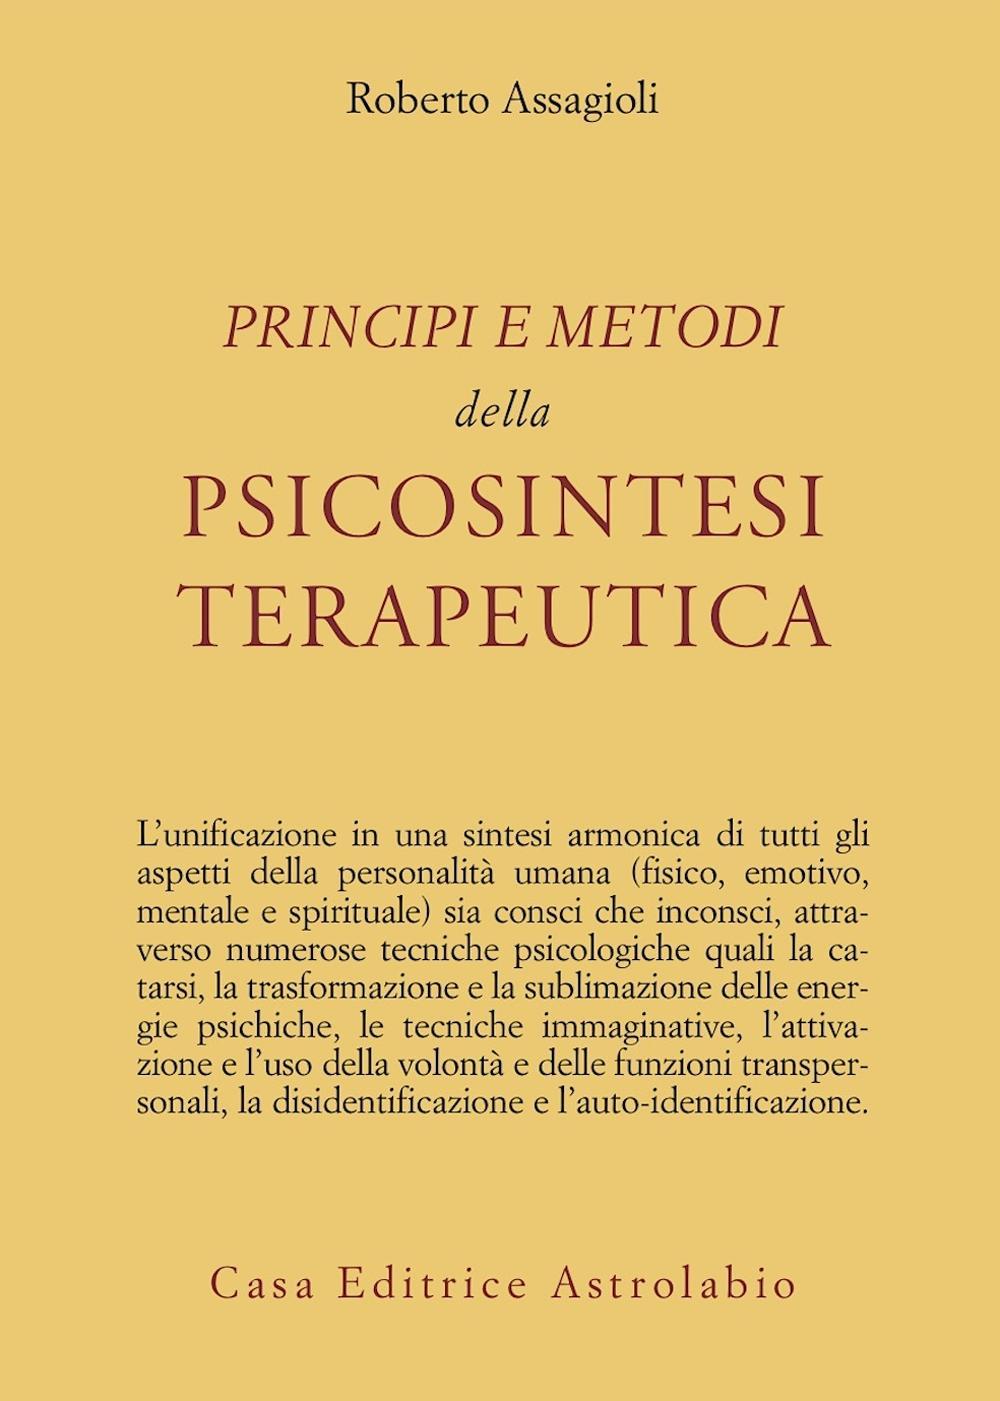 Kniha Principi e metodi della psicosintesi terapeutica Roberto Assagioli